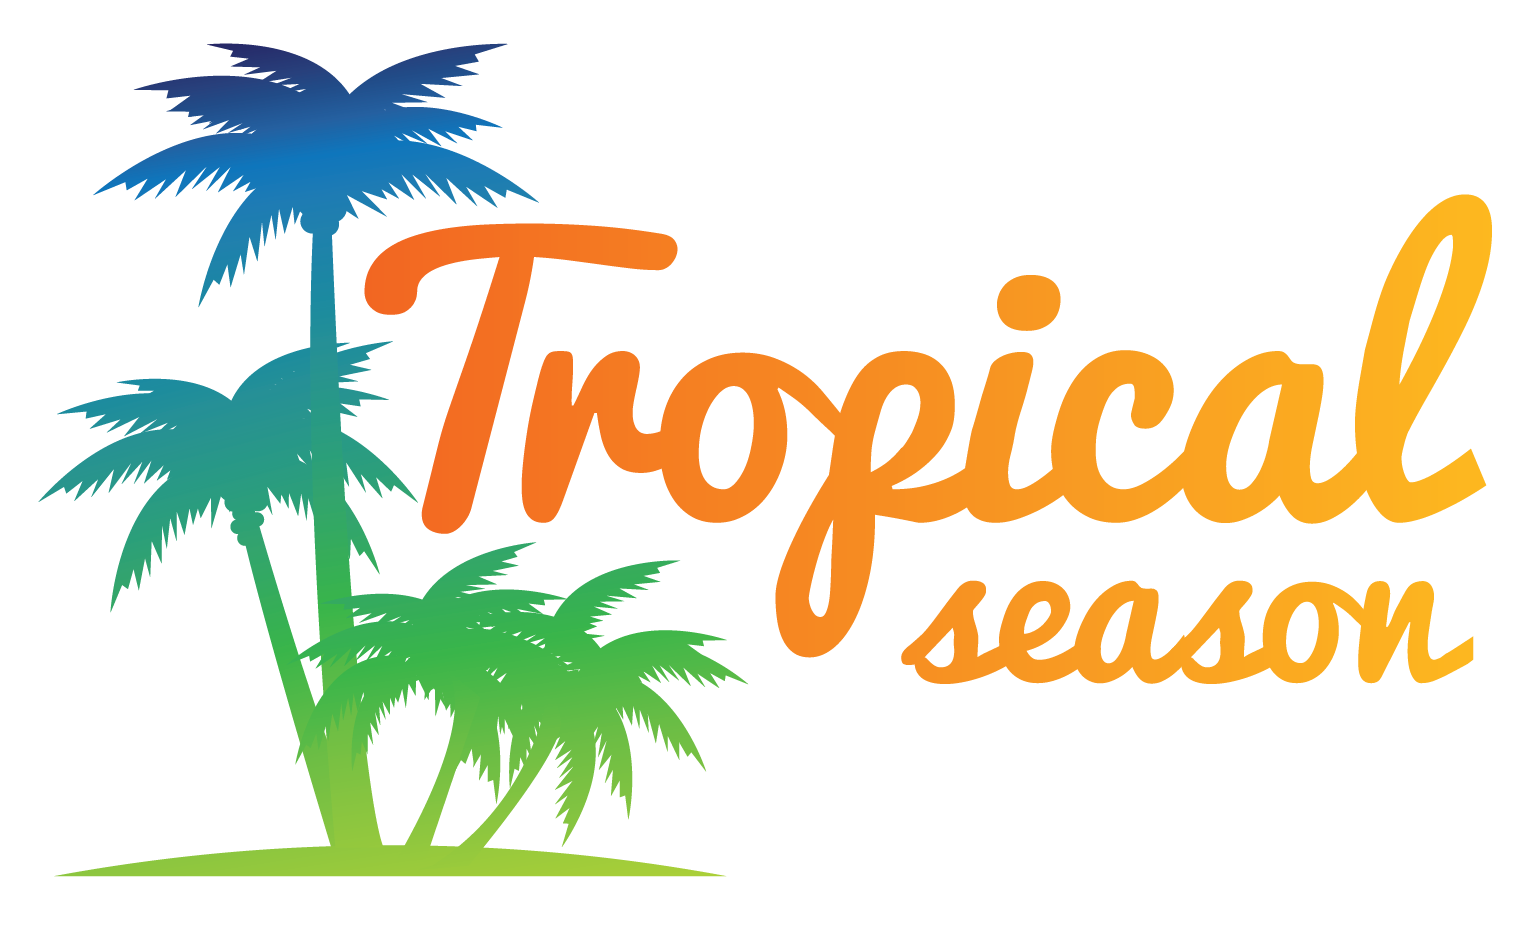 Tropical Season - Agncia de Viagens